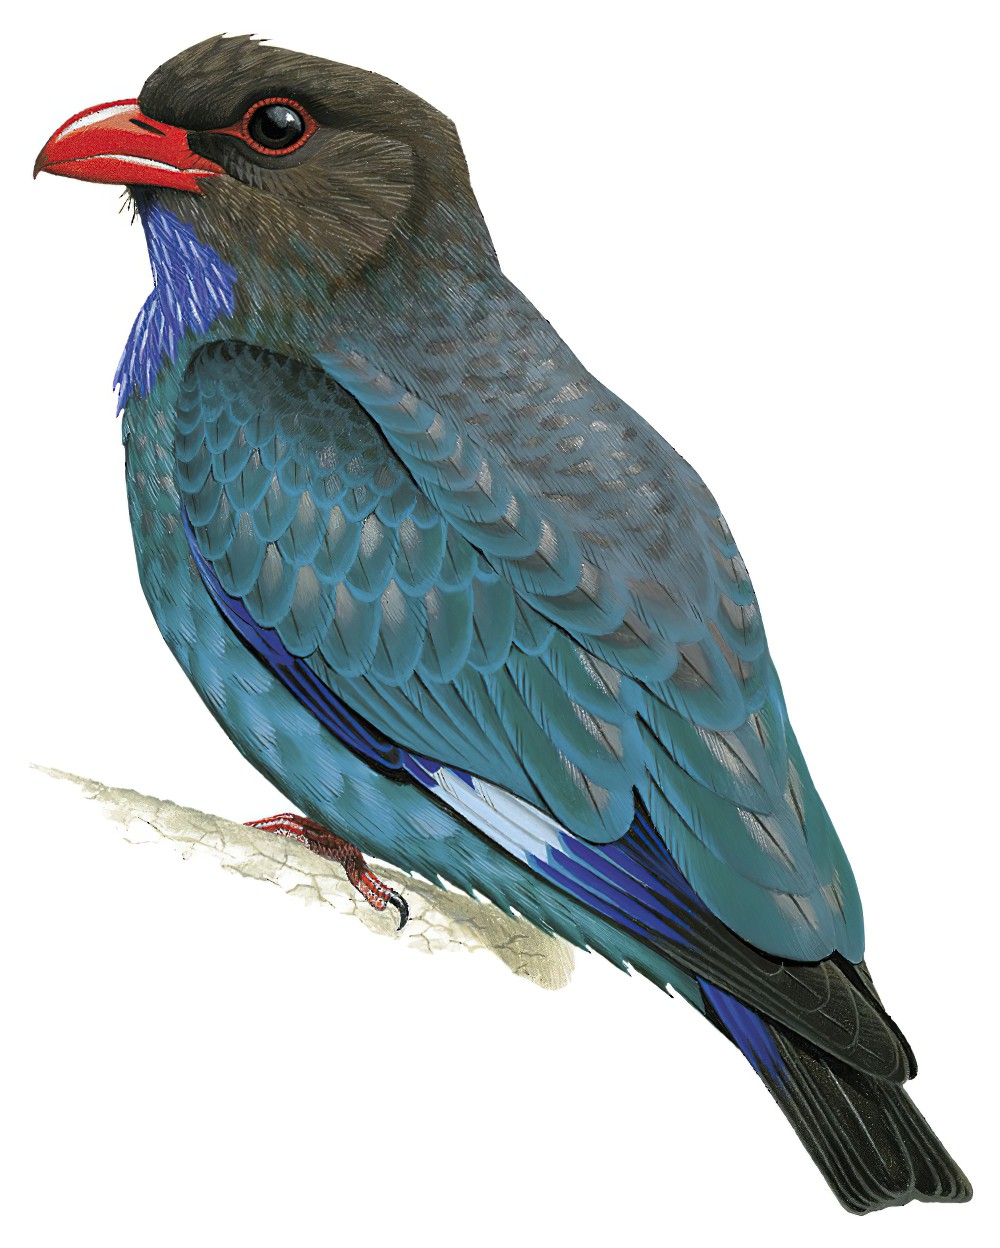 Dollarbird / Eurystomus orientalis